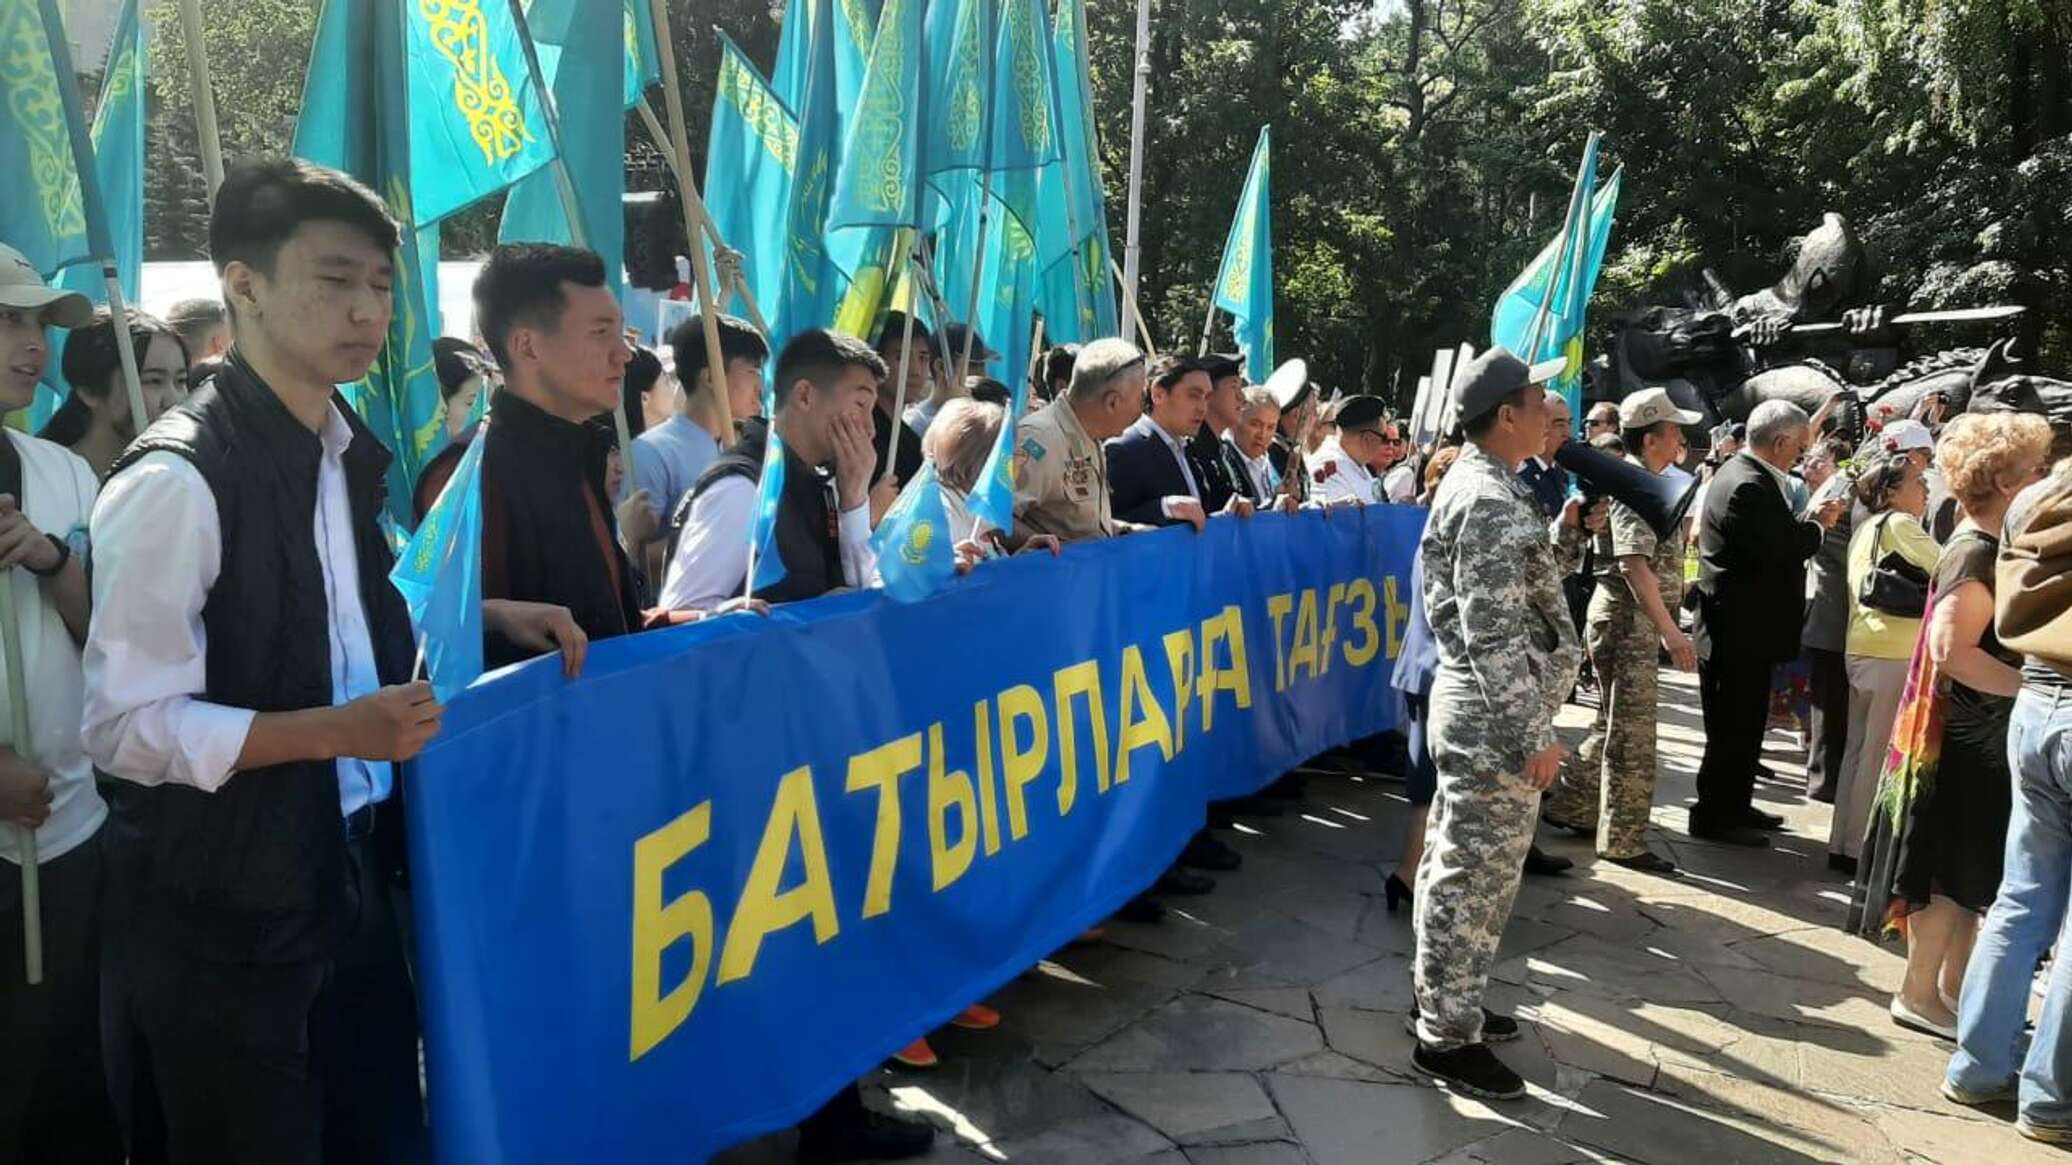 Пройдет ли в Алматы шествие в память героев ВОВ, станет известно лишь 3 мая – организатор